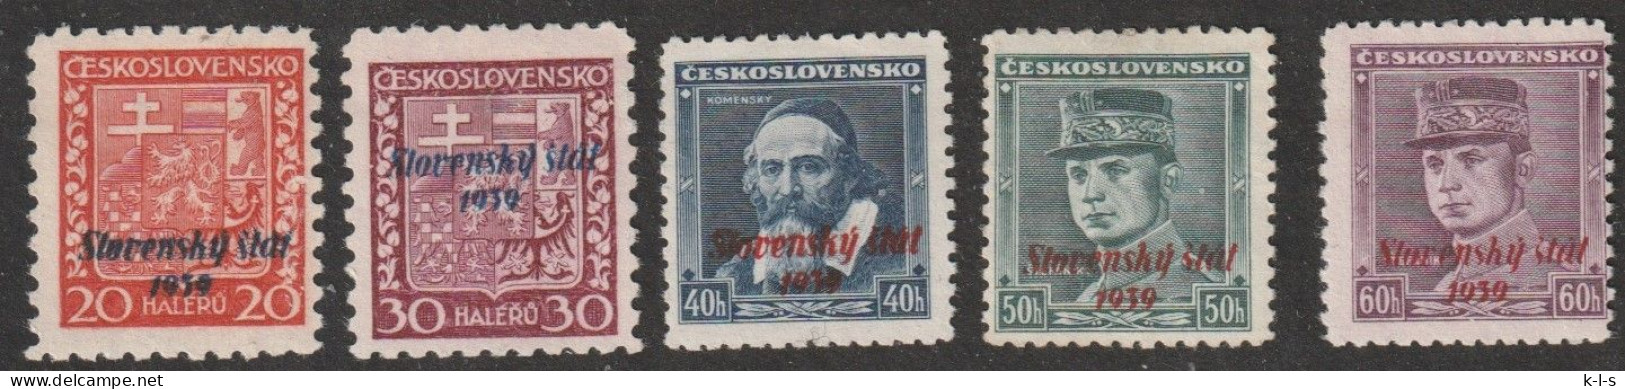 Slowakei: 1939, Freimarken. Mi. Nr. 4, 6, 7, 8, 10, Marken Der Tschechoslowakei Sowie Slowakei.   **/MNH - Neufs